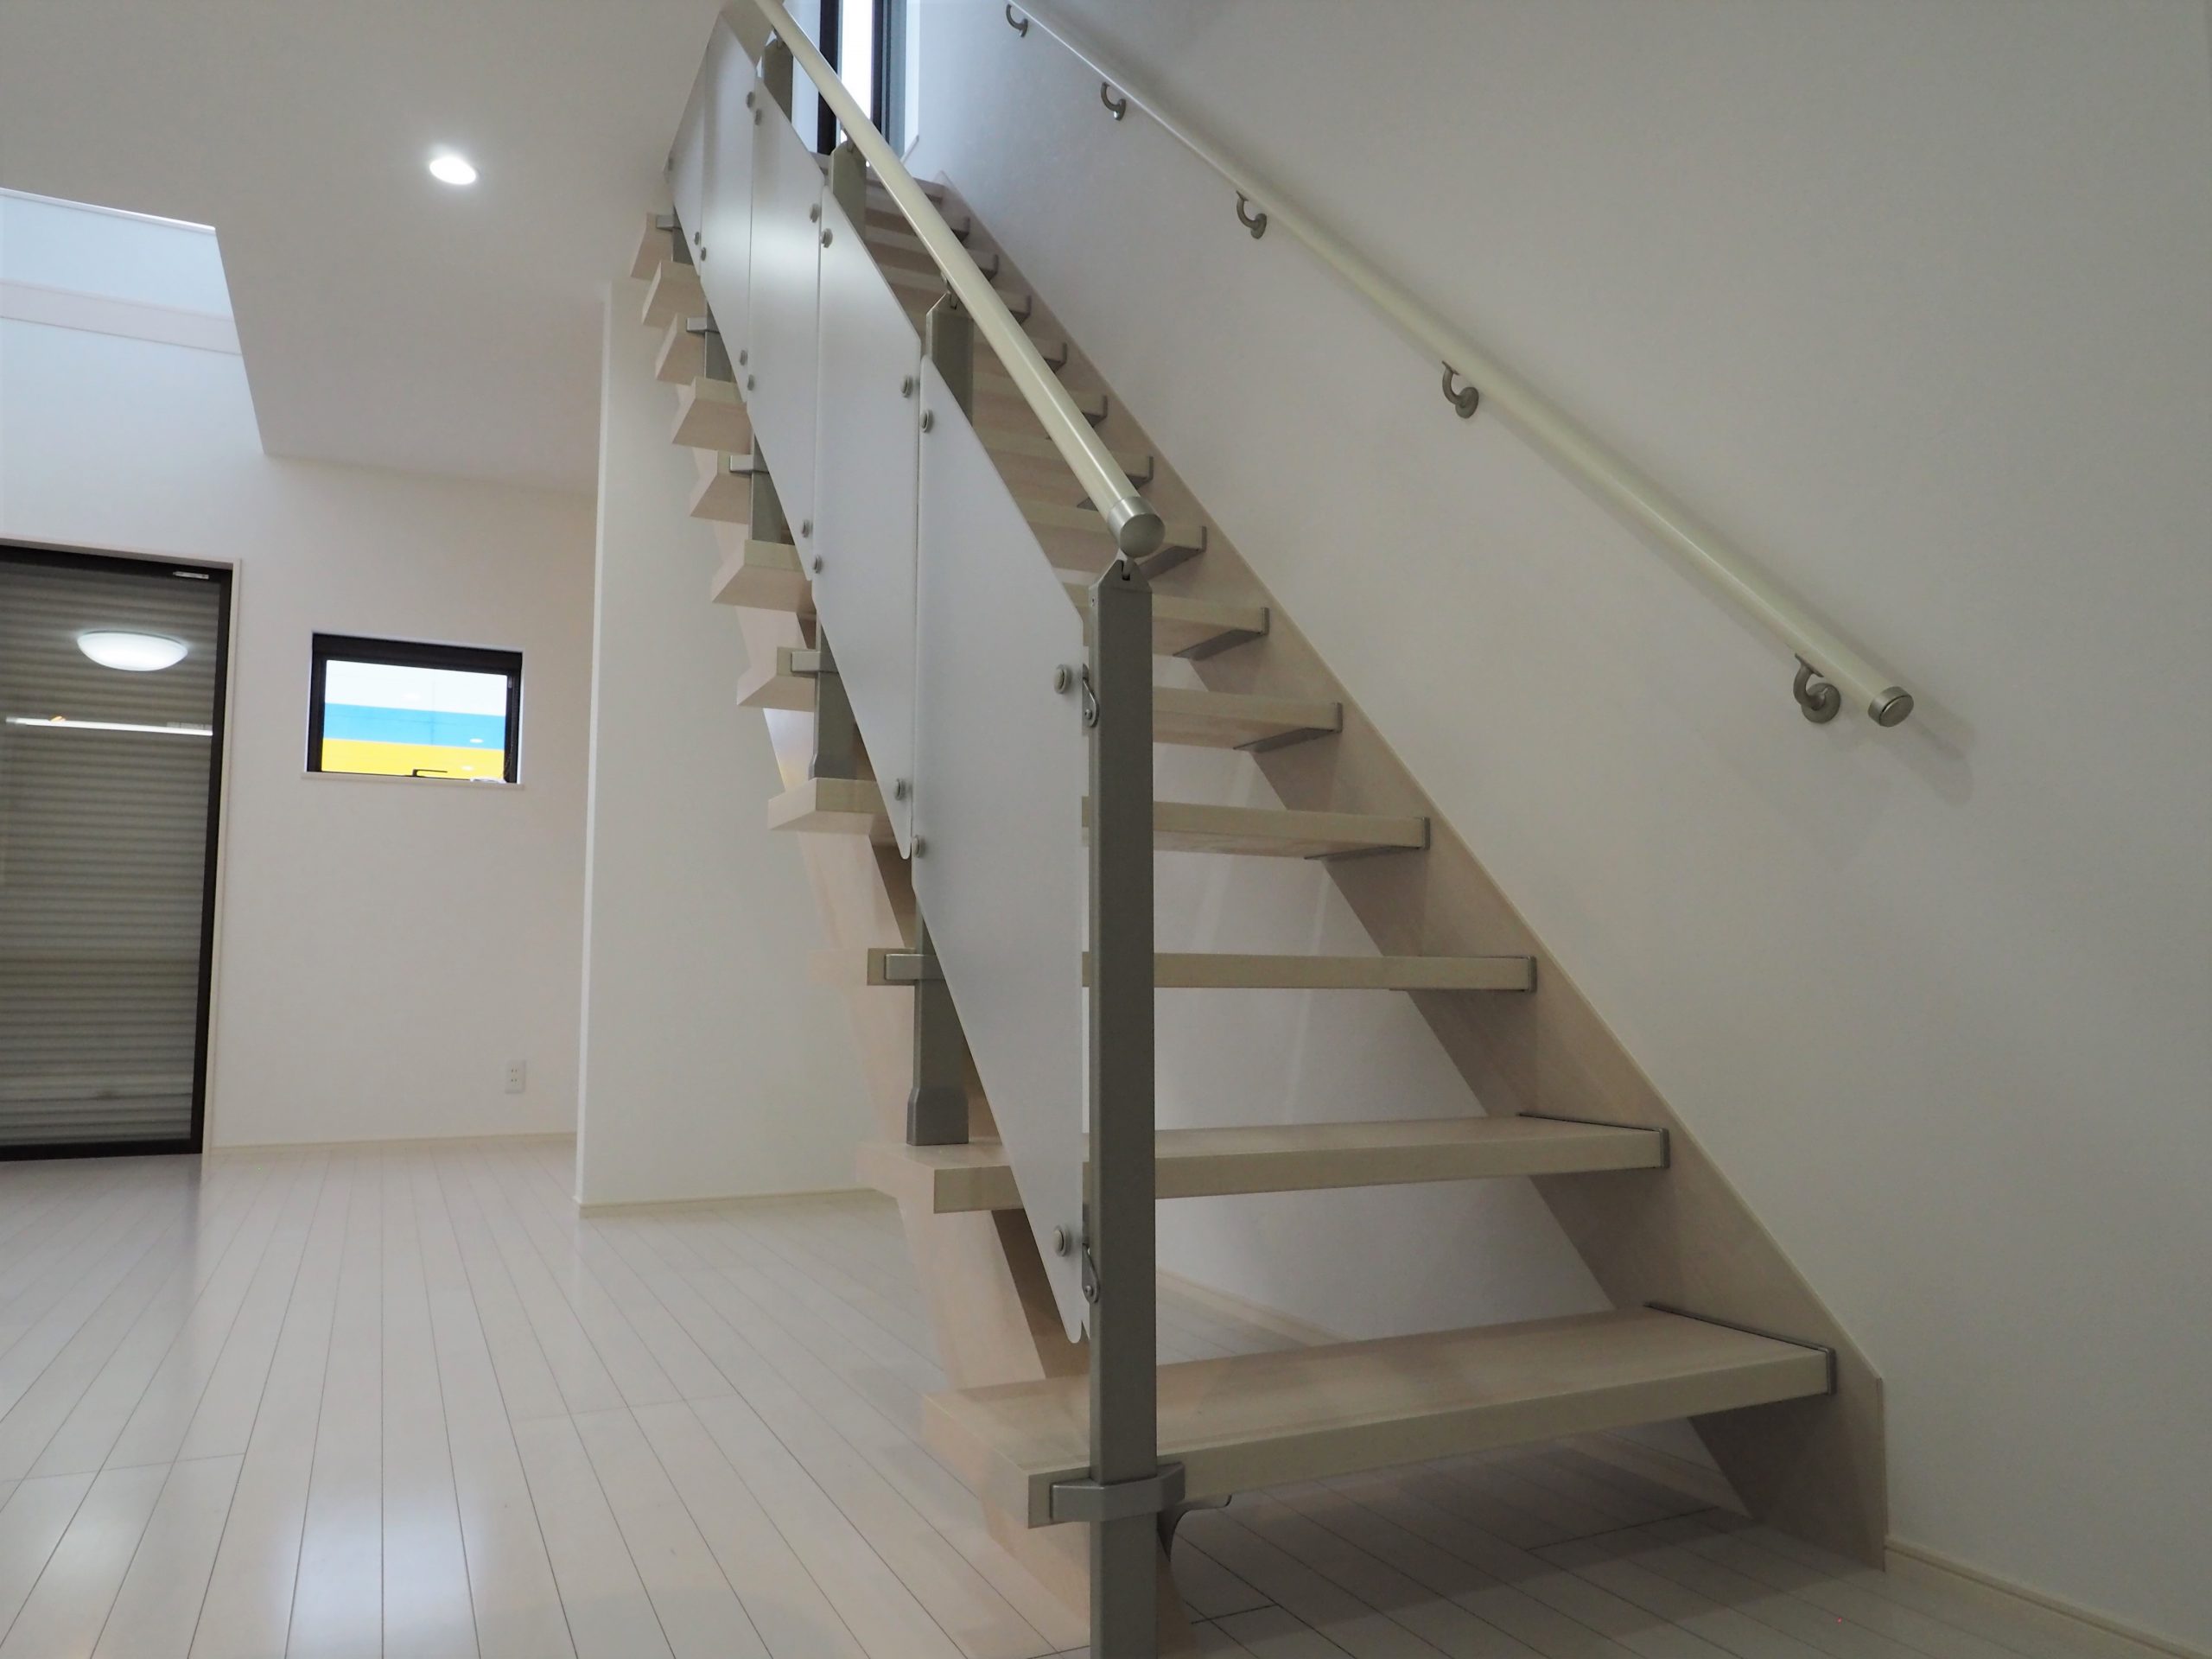 坂戸市にっさい新築戸建て住宅のスケルトン階段画像